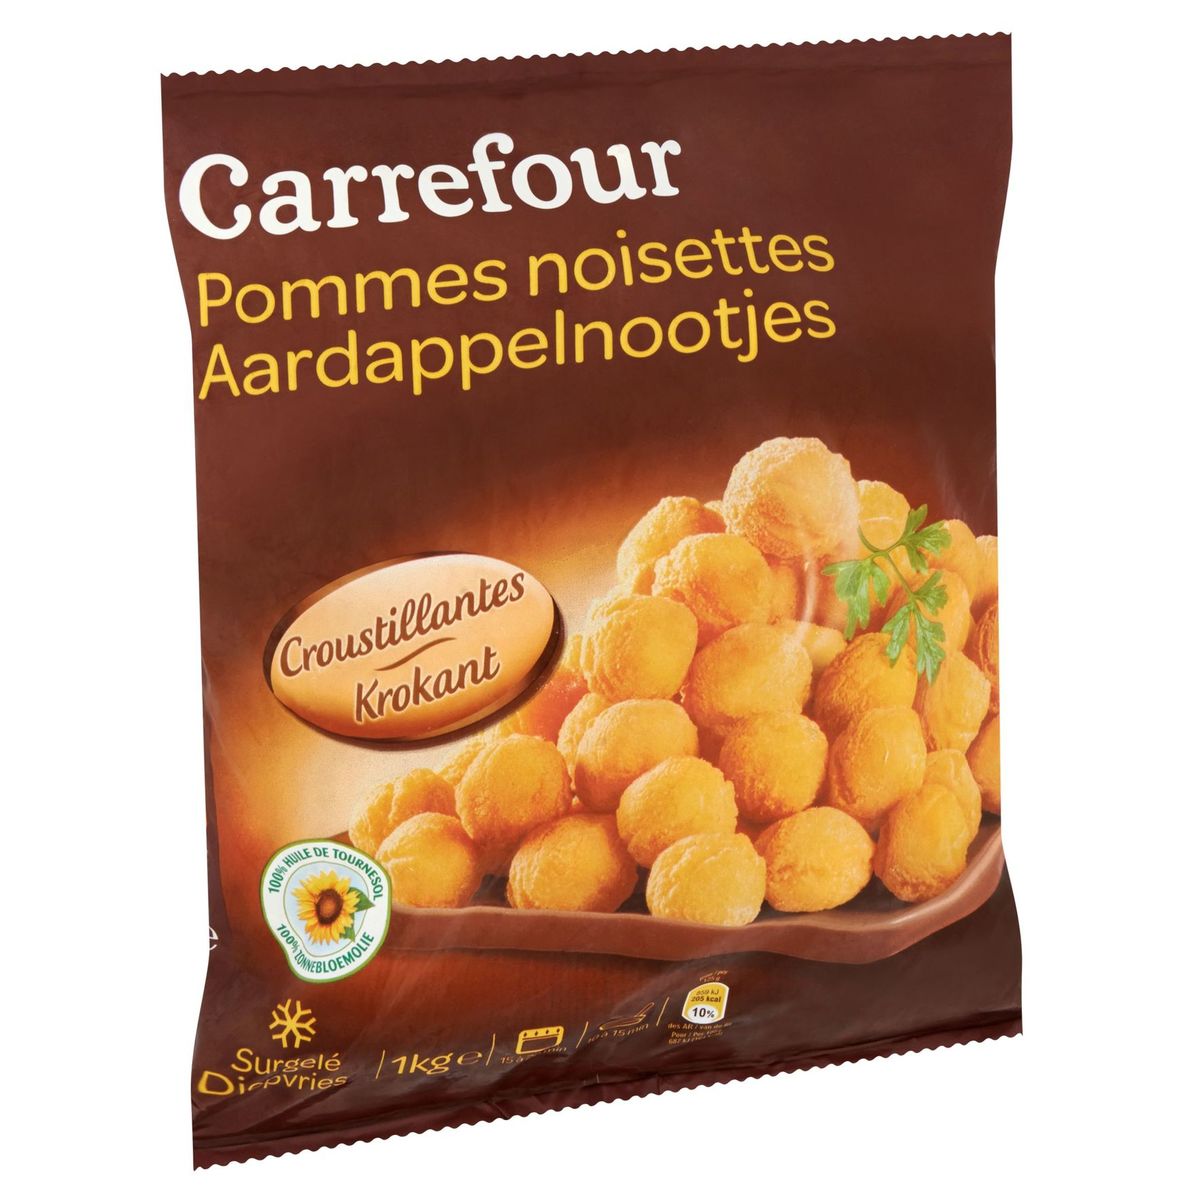 Carrefour Aardappelnootjes Krokant 1 kg